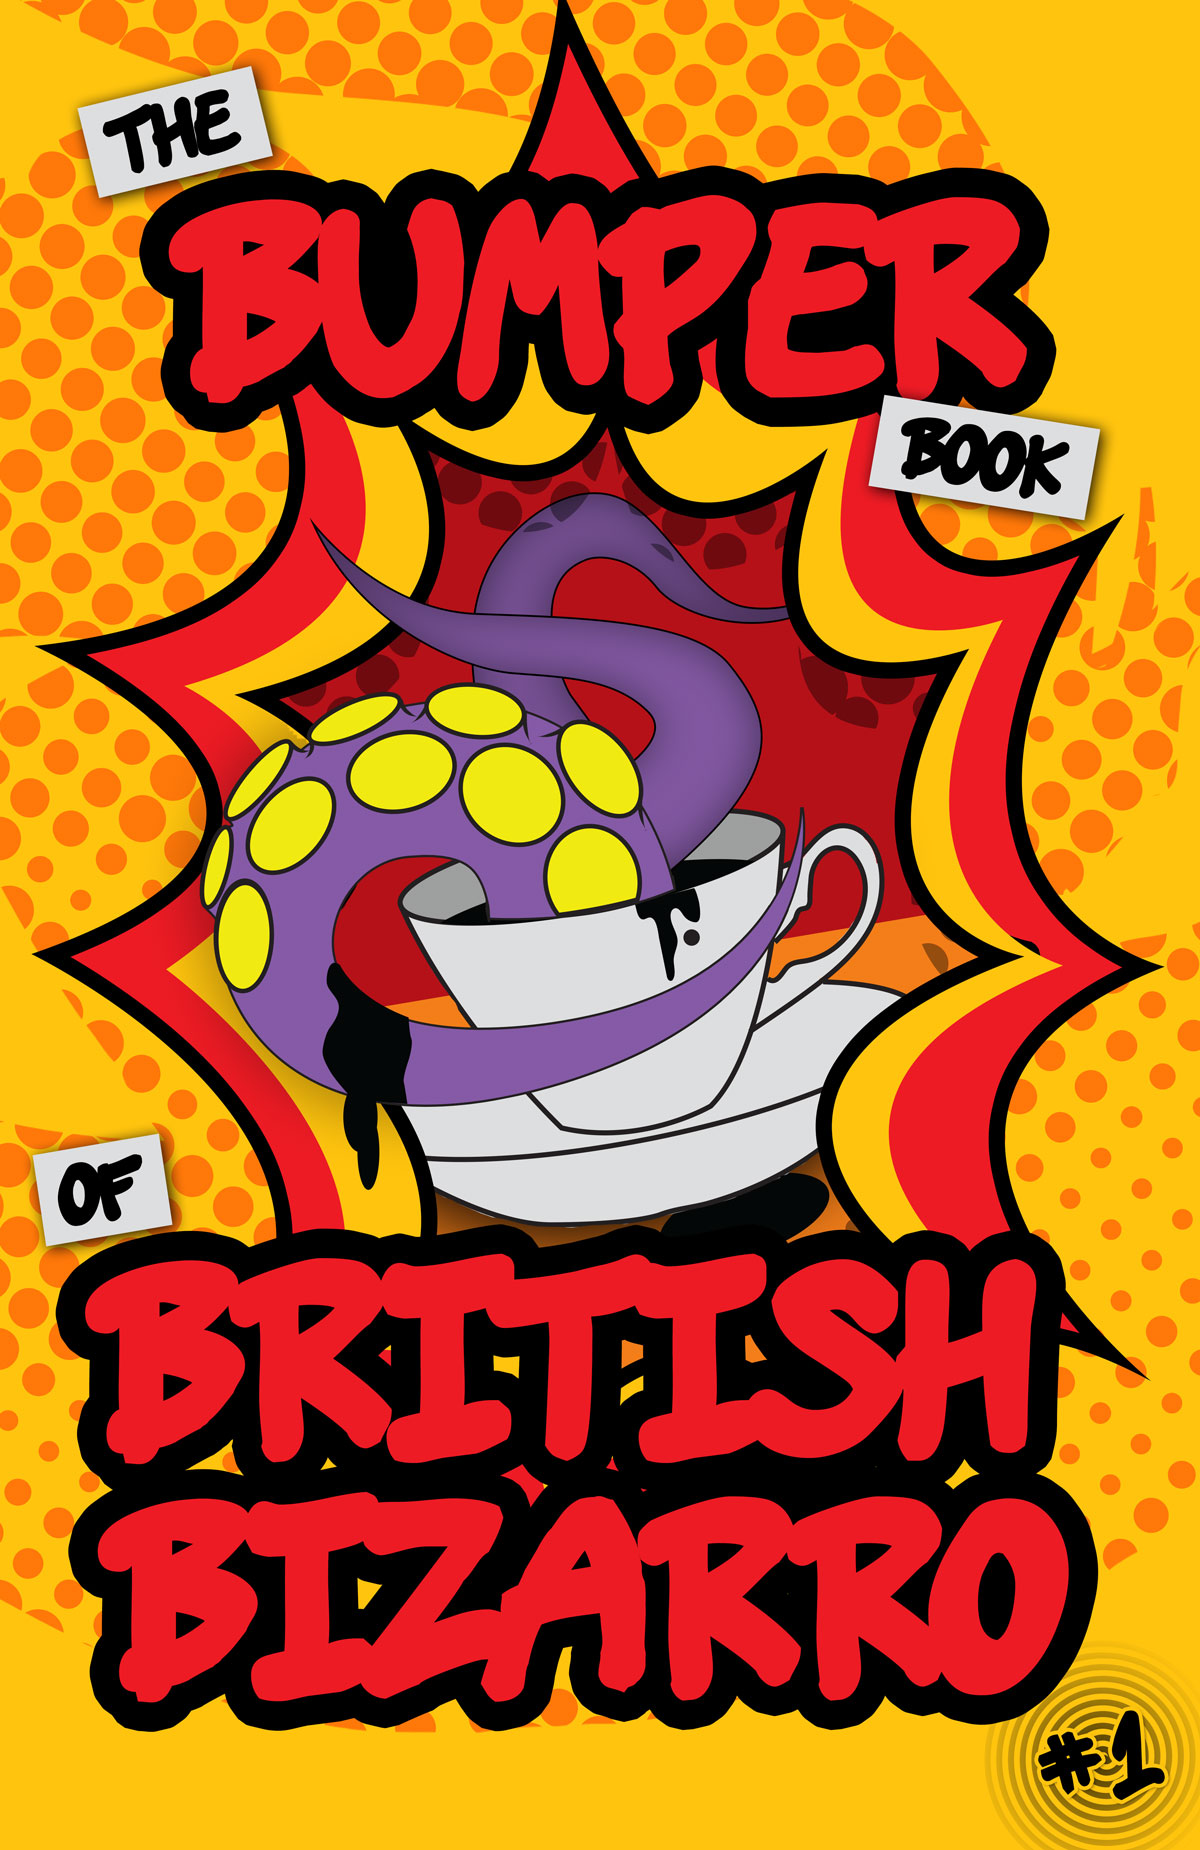 The Bumper Book of British Bizarro